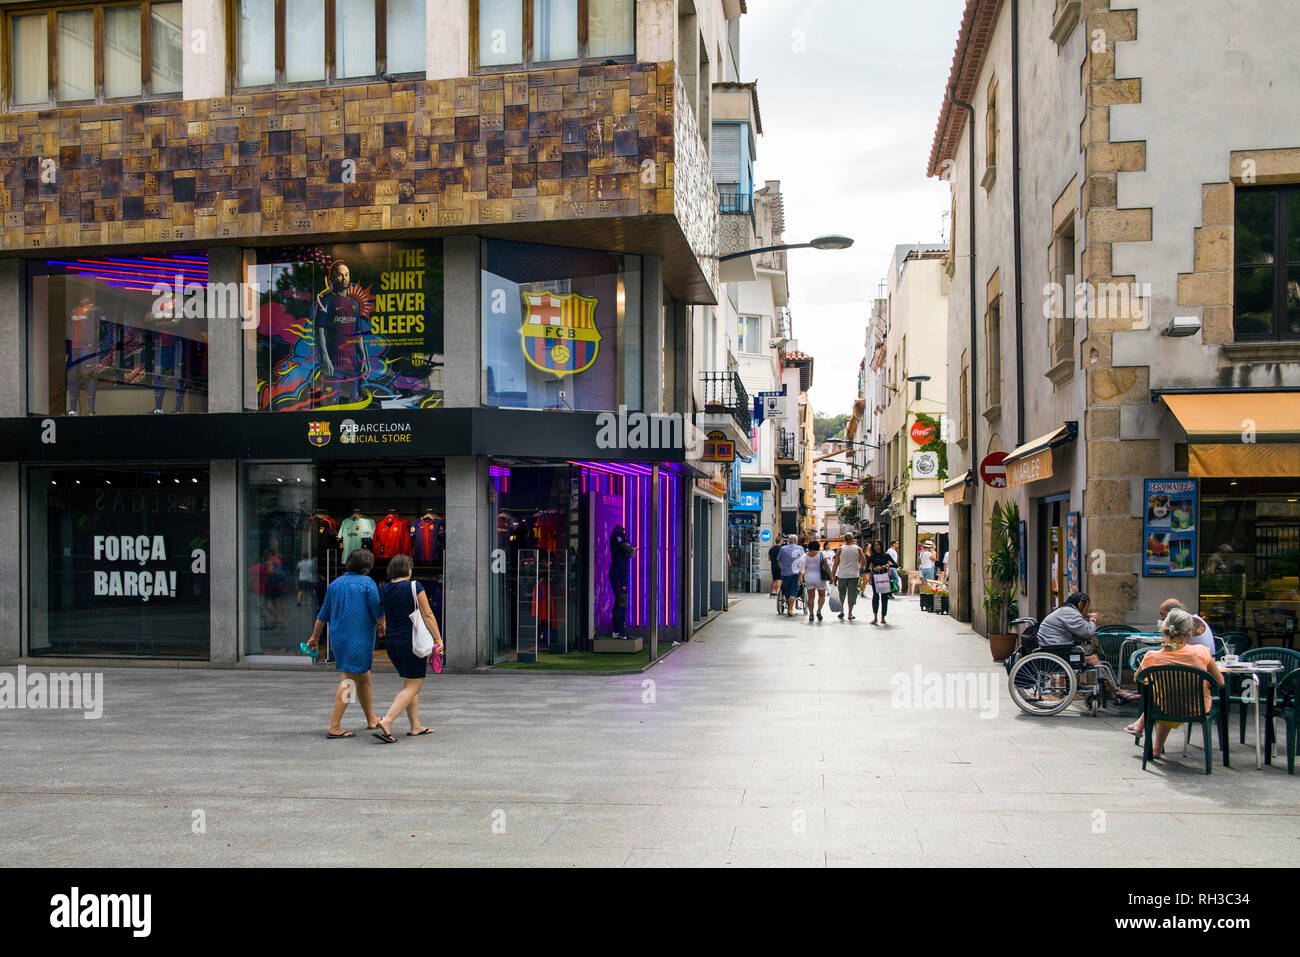 Geschäfte und Cafés in der Nähe der engen Straßen von Lloret de Mar  Stadtzentrum von Lloret de Mar, Spanien. Touristen durch die Straßen der  Stadt Stockfotografie - Alamy